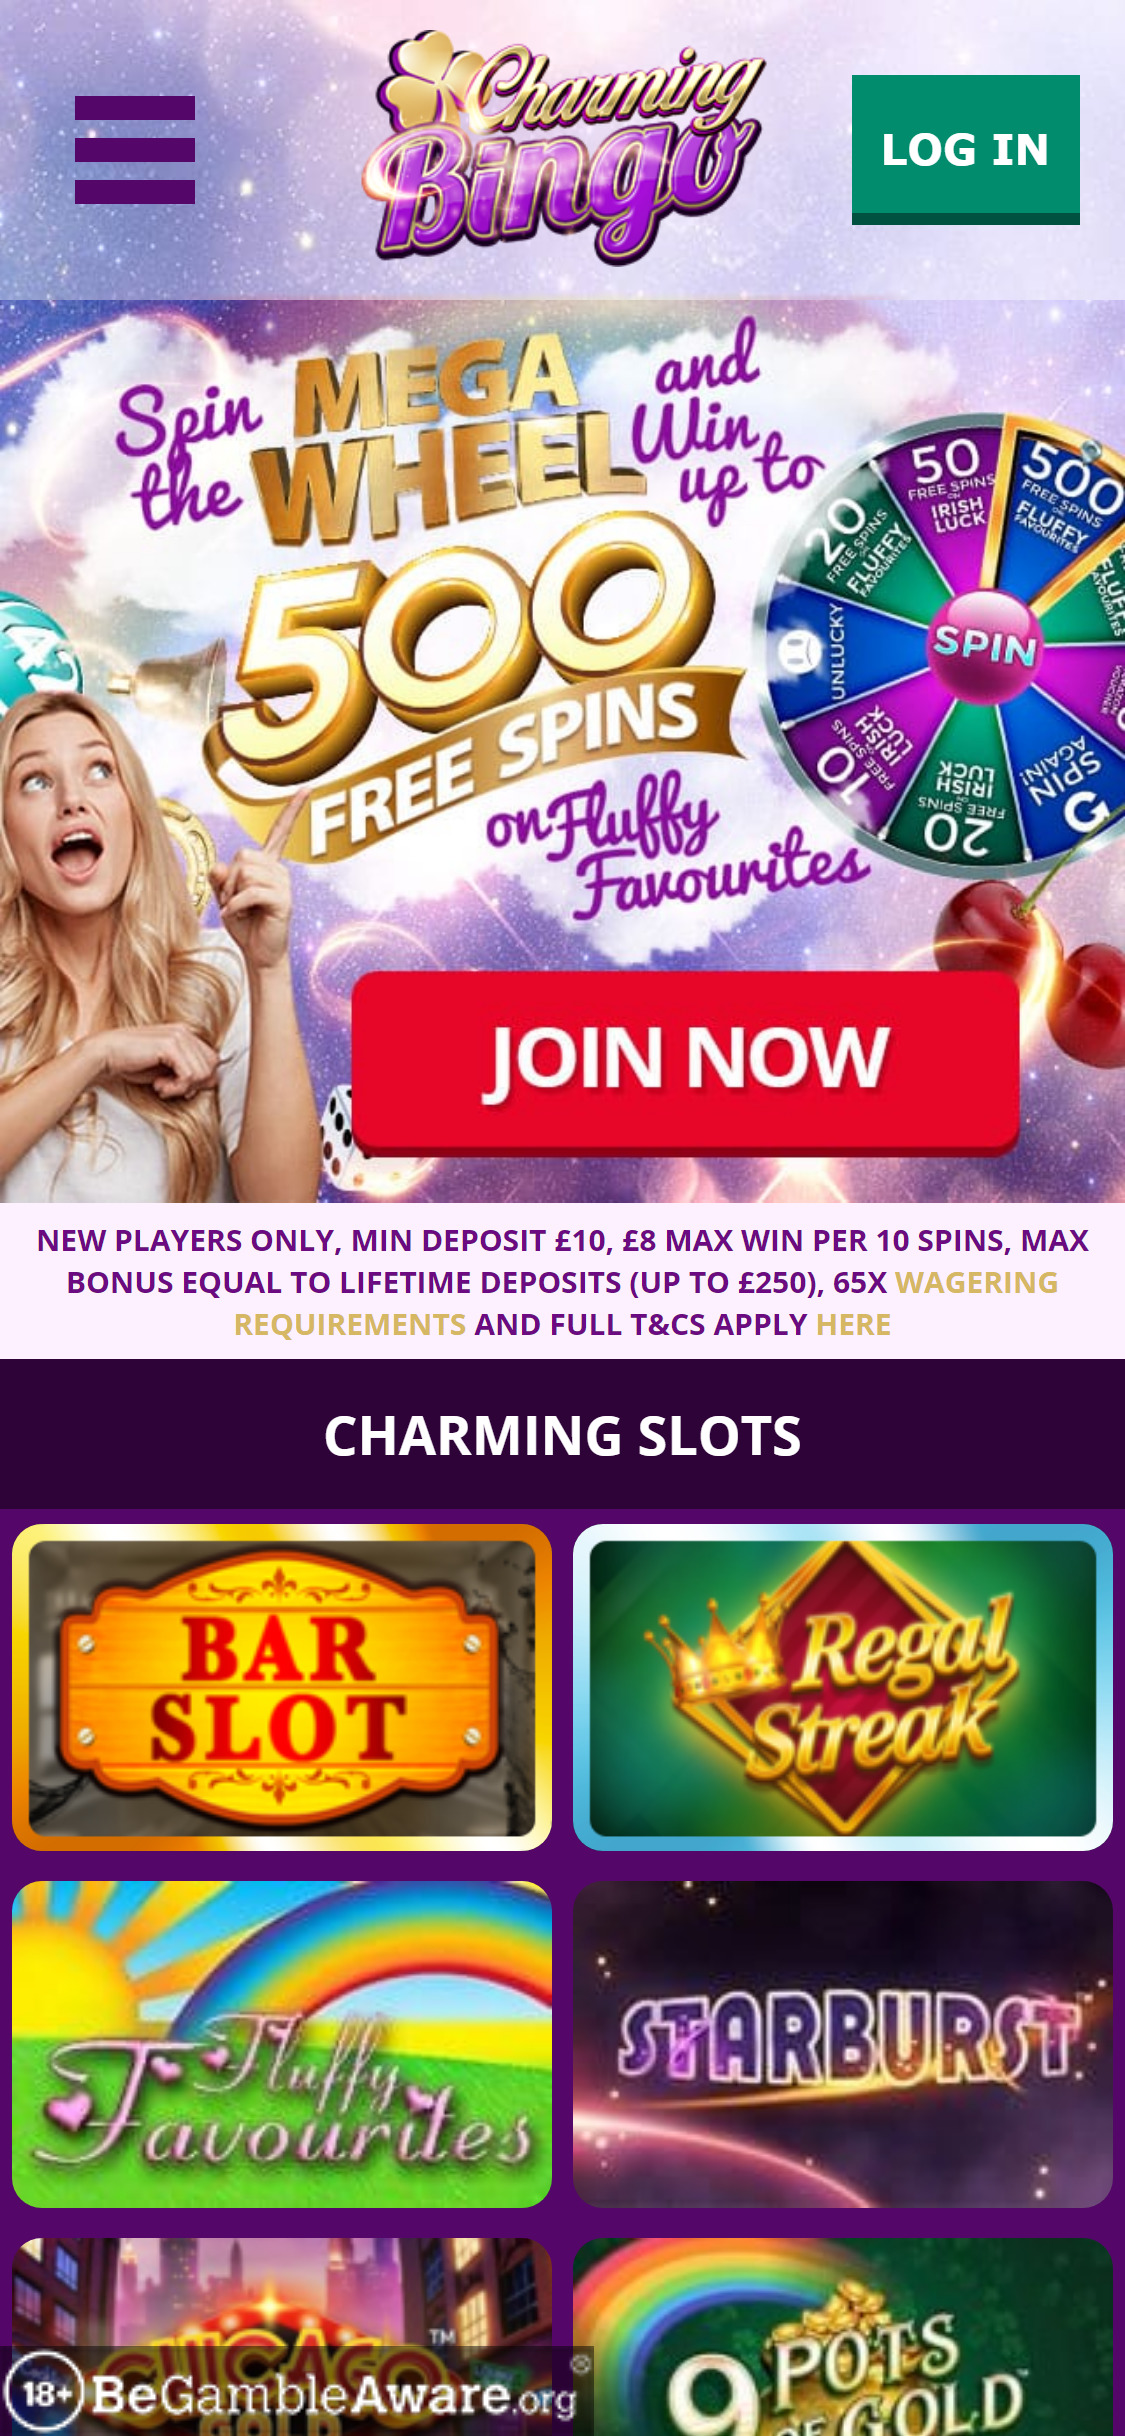 Charming Bingo Casino Mobile Login Review